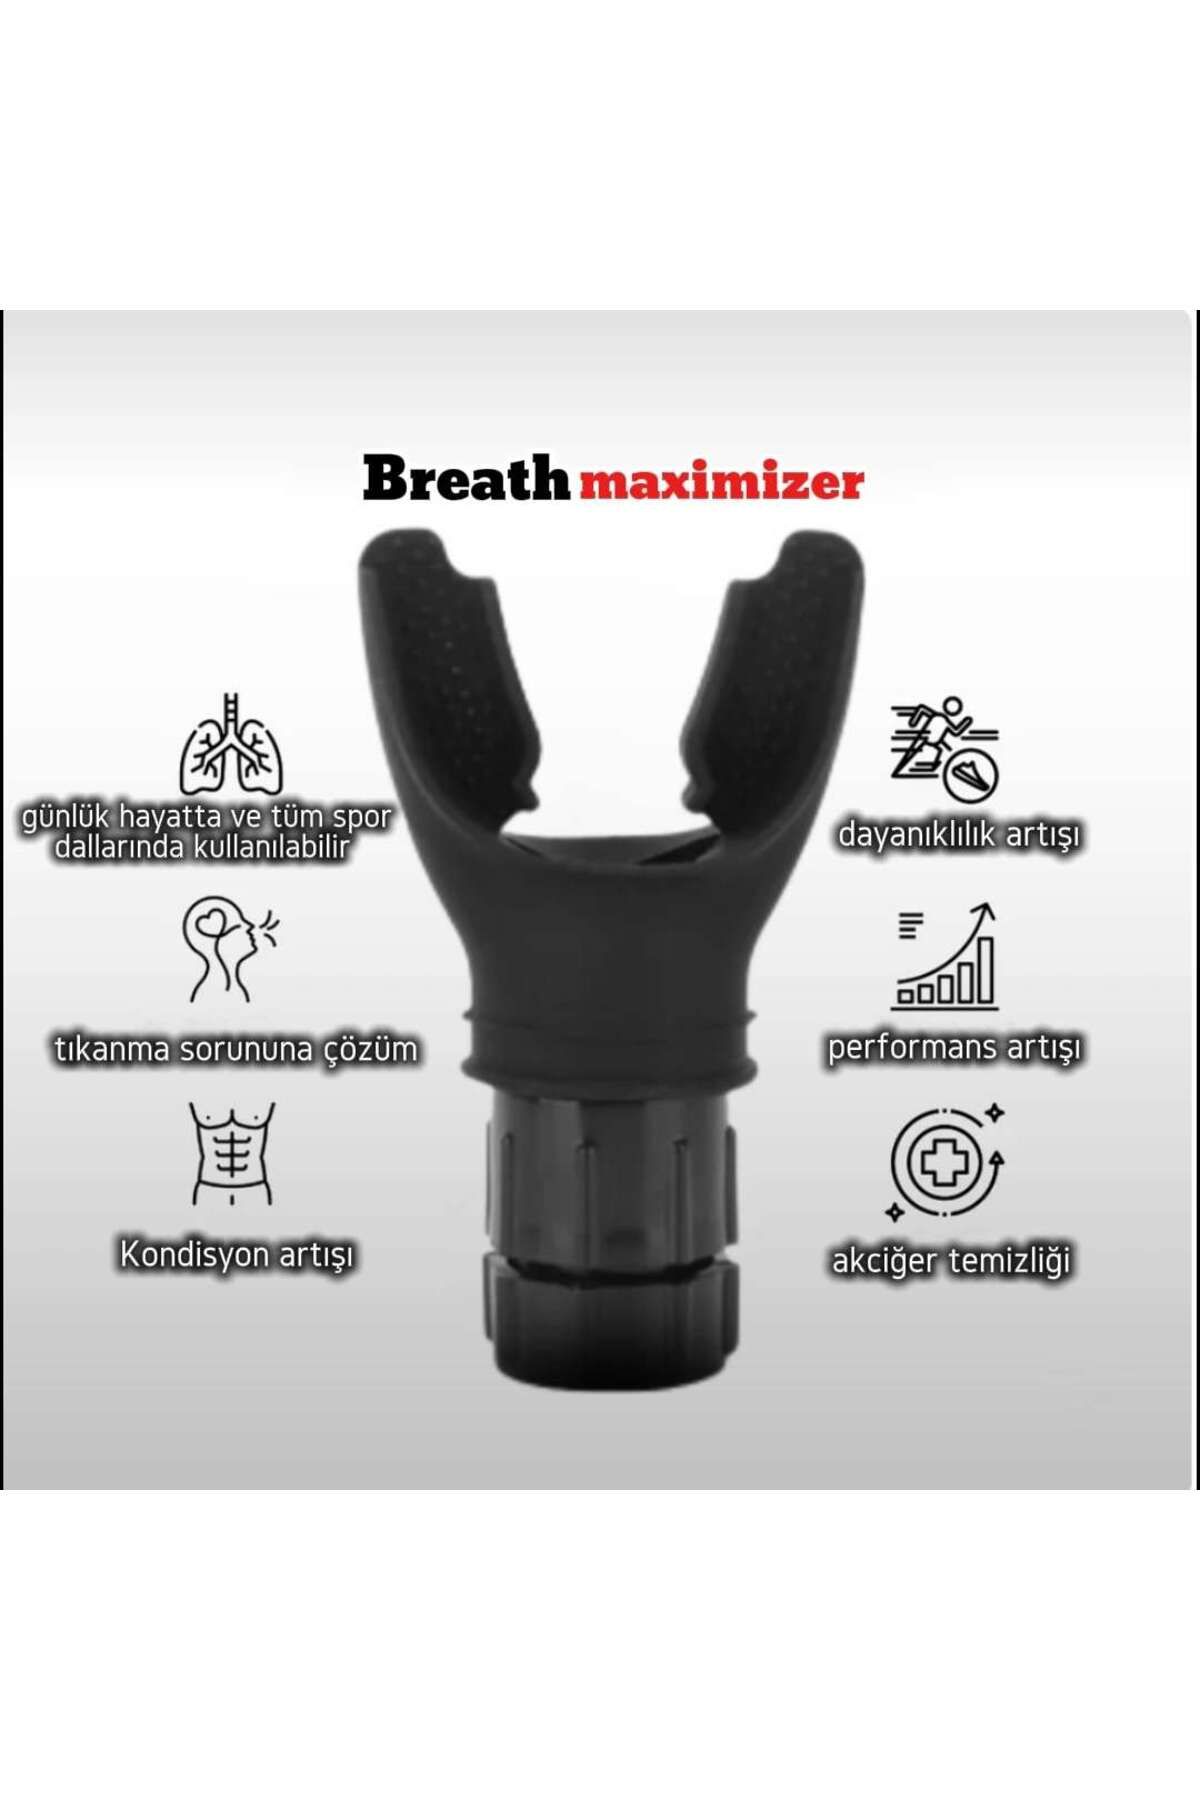 STORE41 Breathmaximizer(ıron Lung) Nefes Egzersiz Aleti Kondisyon/dayanıklılık Geliştirici (siyah)